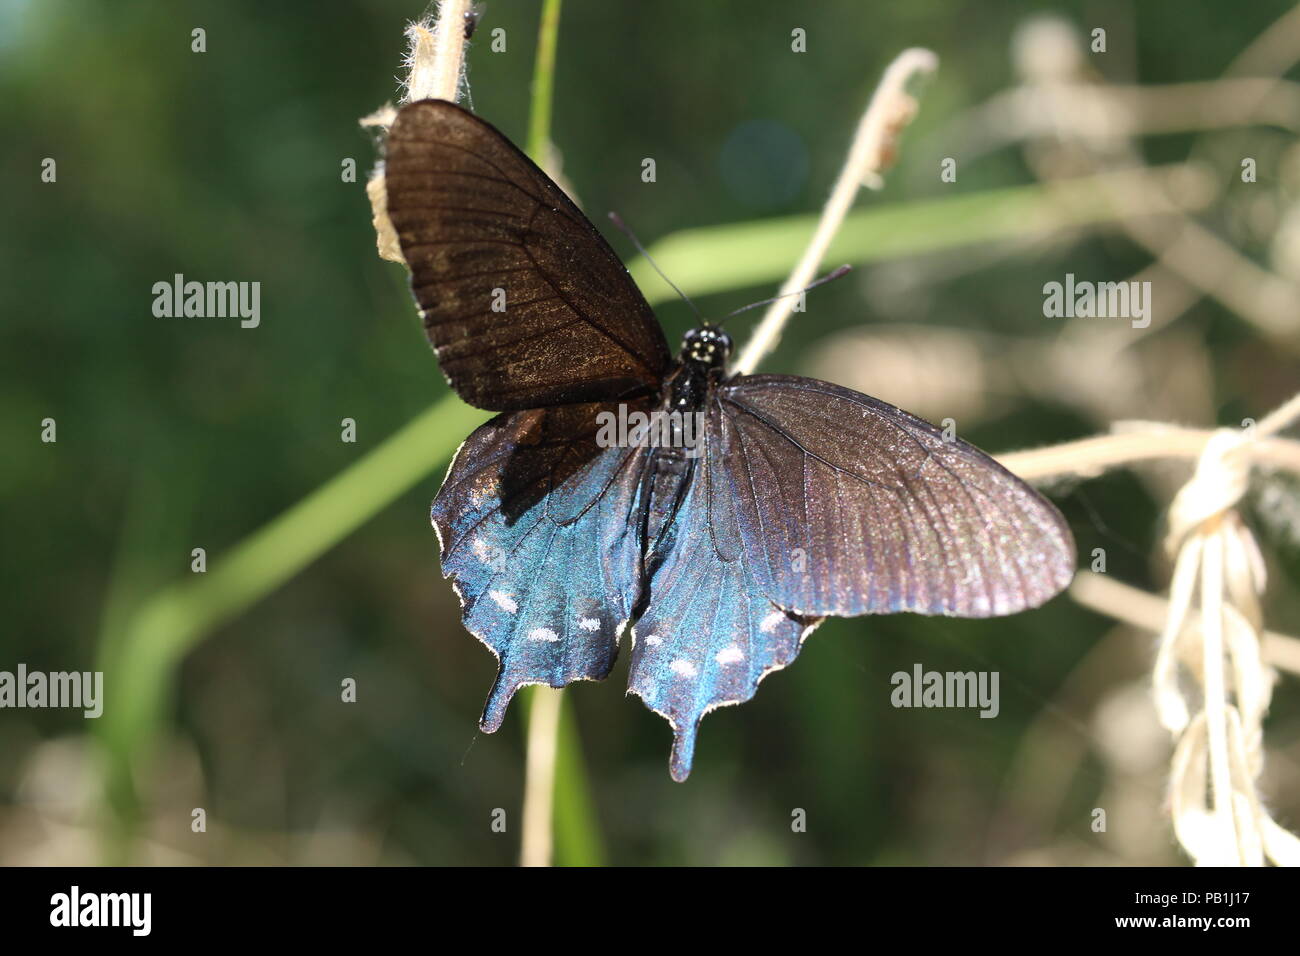 Ce joli papillon capturé lors d'une randonnée. Ses couleurs irisées fait ses ailes' sortir et s'appelle pour les yeux. Banque D'Images